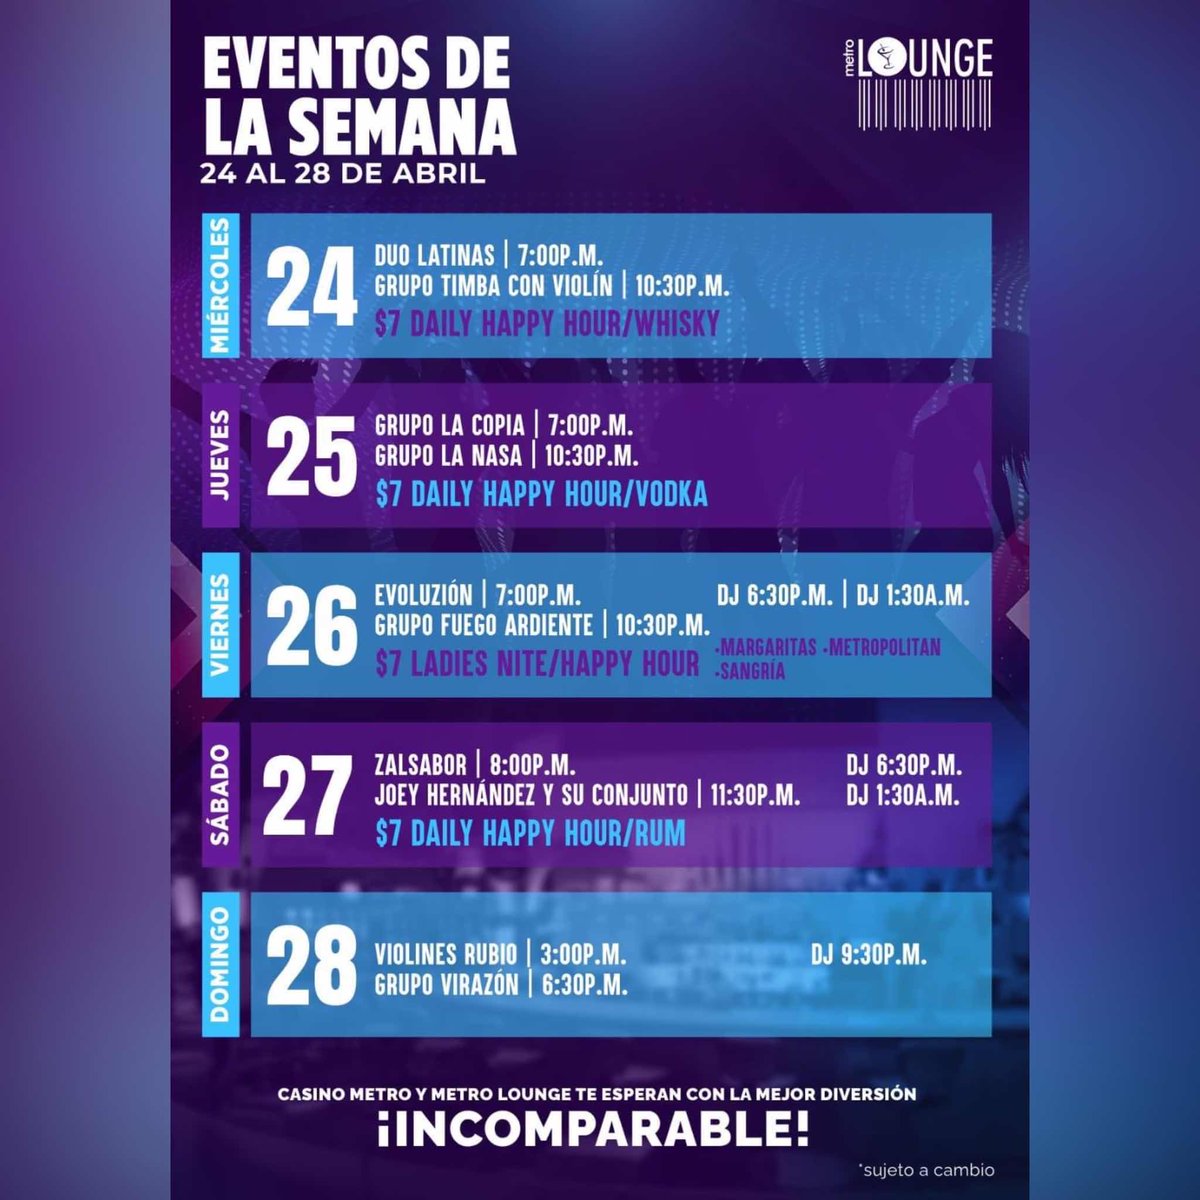 No te pierdas los 🤩 ¡EVENTOS DE LA SEMANA! en el 🪩 Metro Lounge de @CasinoMetro #CasinoMetro #MetroLounge #Casinos #PuertoRico #DescubreTuIsla #Musica #Bar #HappyHour